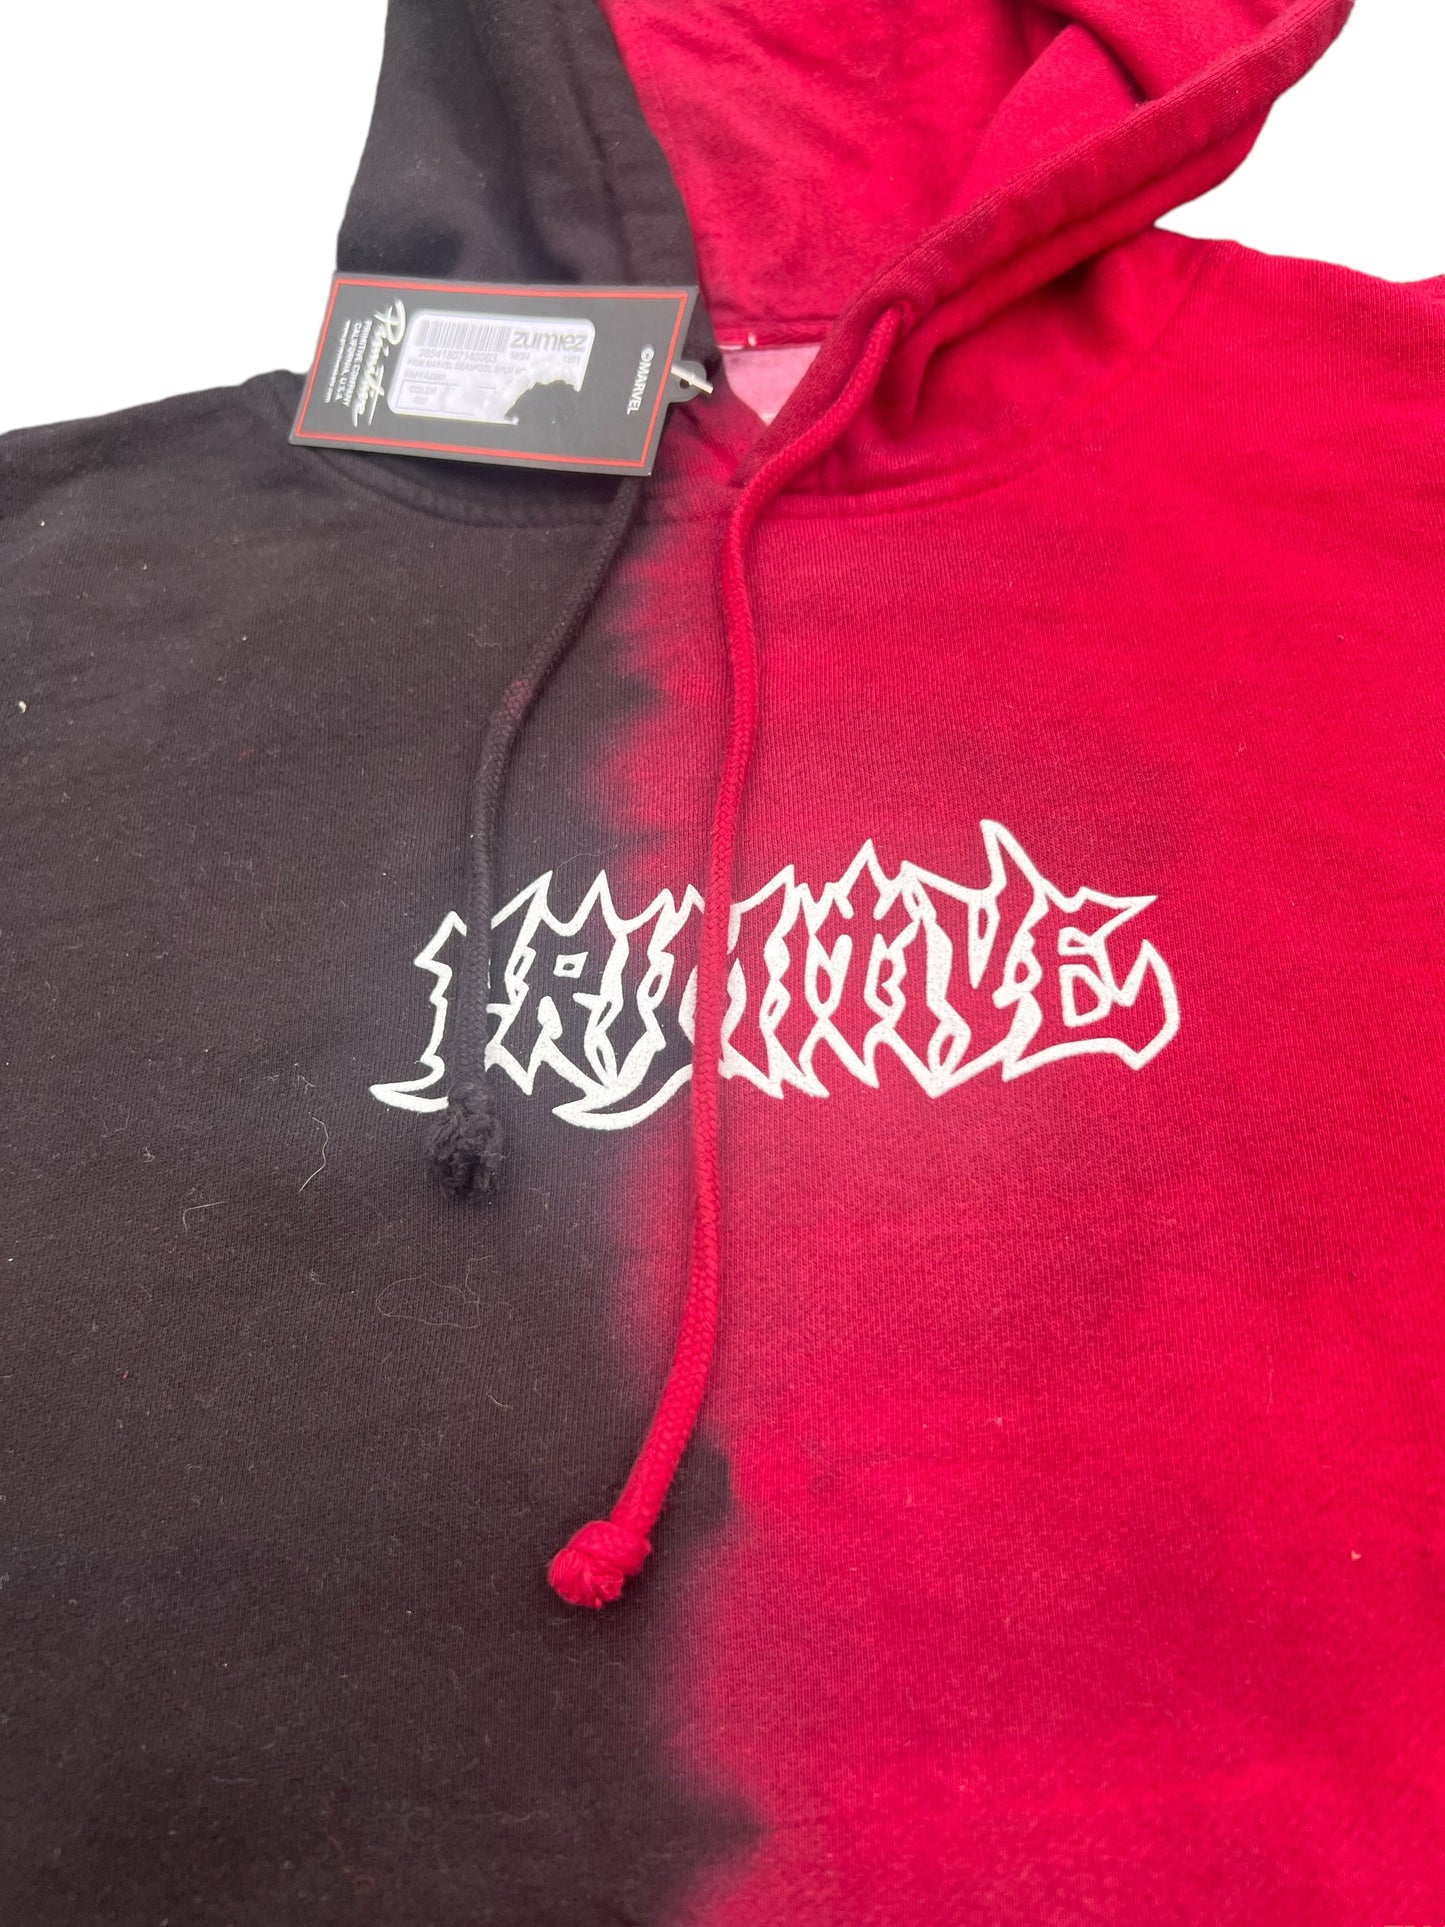 Primitive Marvel Red/Black sweatshirt hoodie